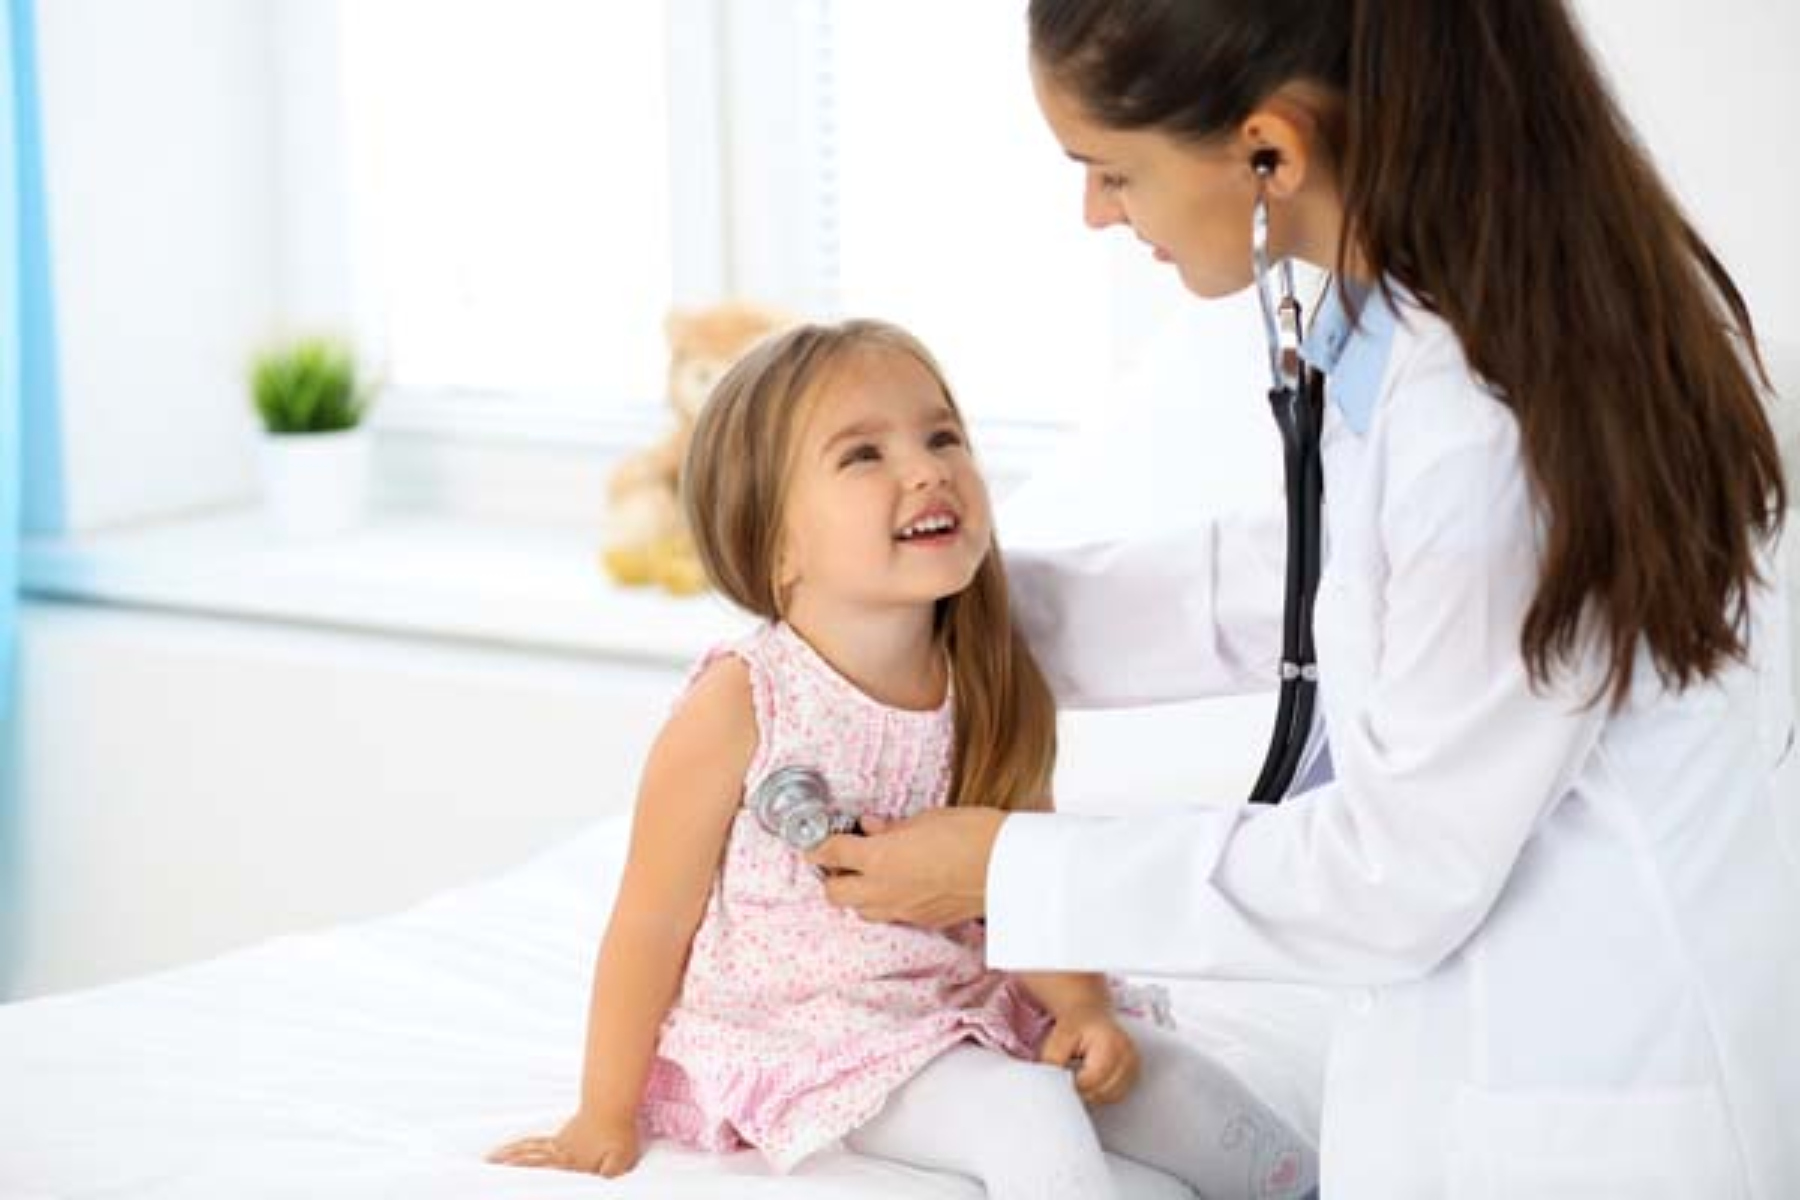 Άσθμα: Μπορούν τα βακτήρια στον παιδικό σταθμό να αυξήσουν τις πιθανότητες για άσθμα;